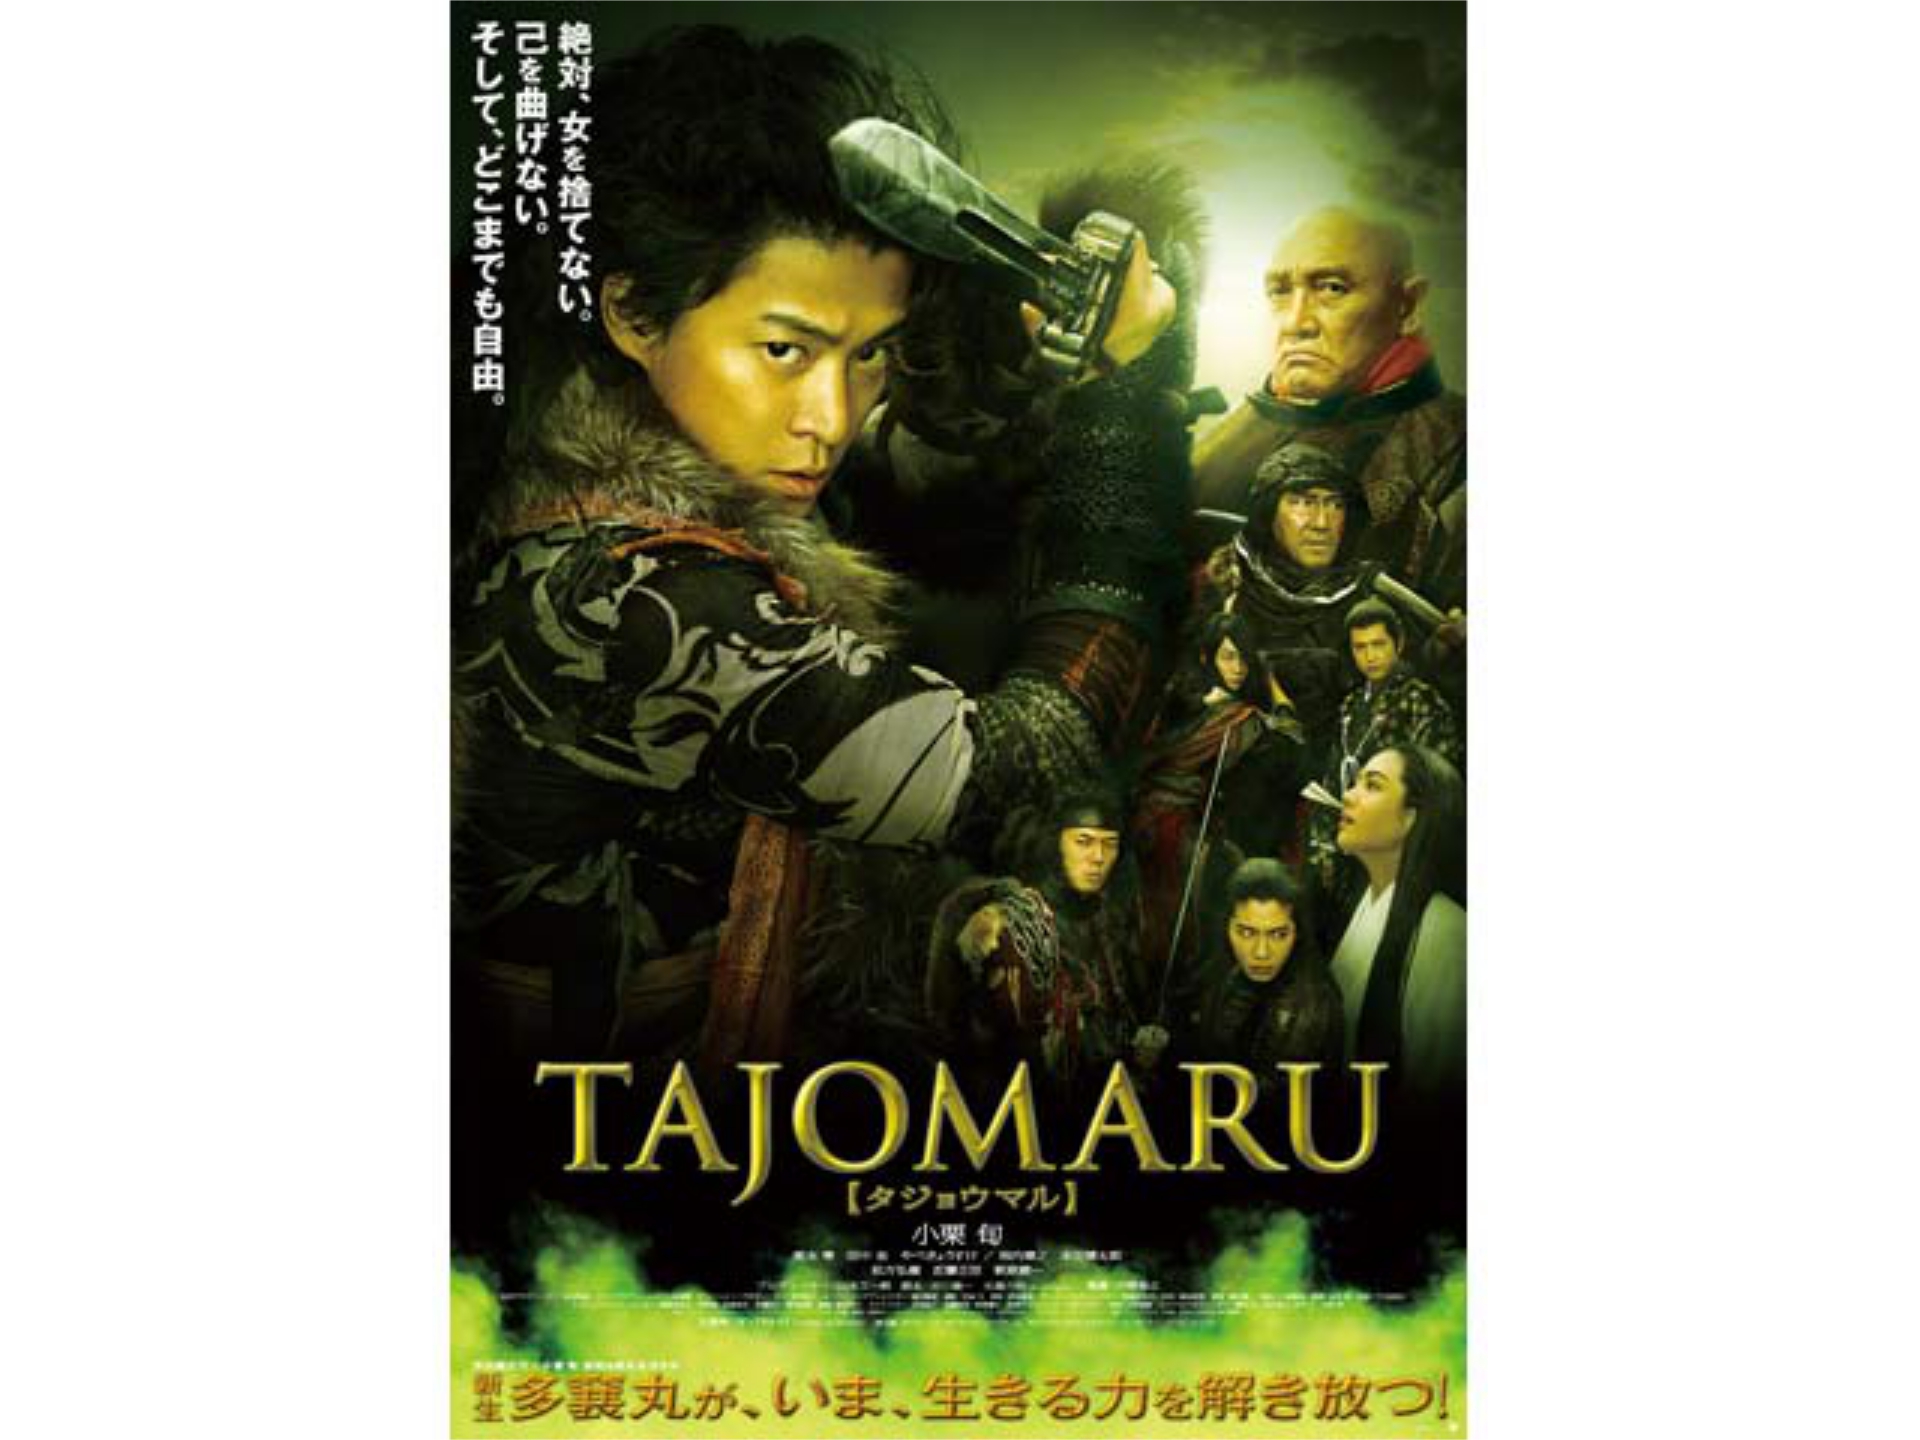 無料視聴あり 映画 Tajomaru の動画 初月無料 動画配信サービスのビデオマーケット